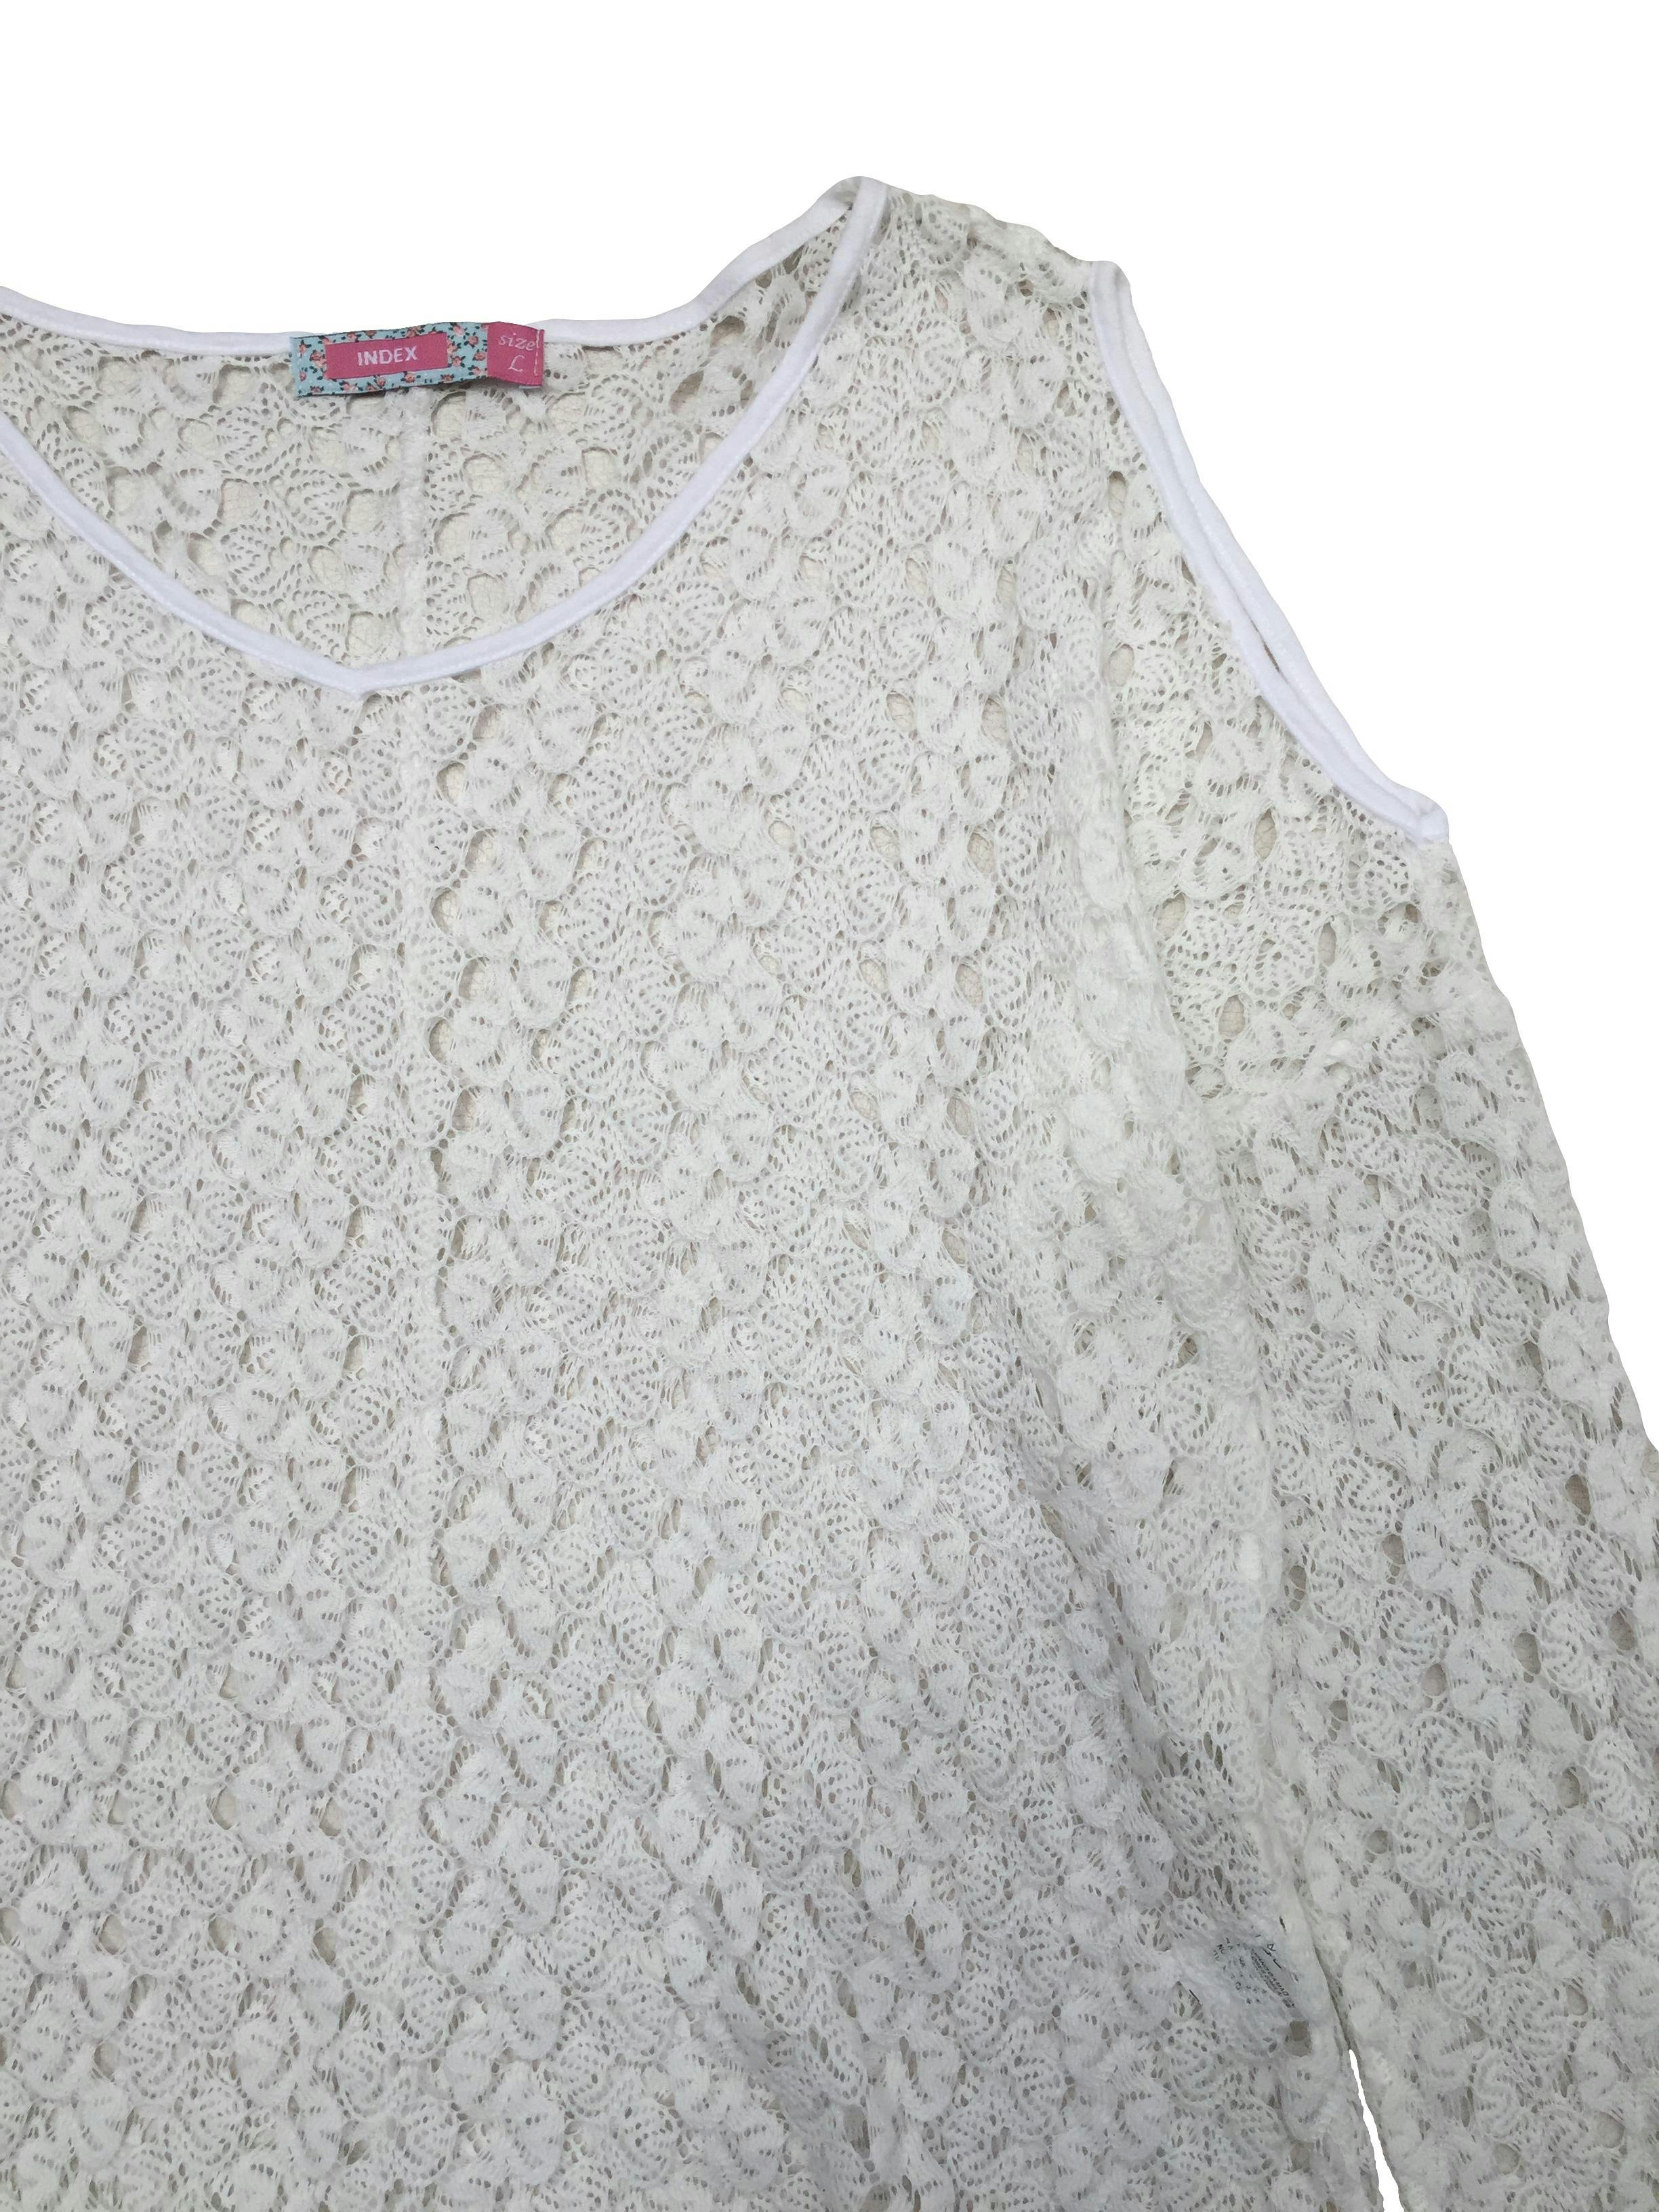 Blusa knit Index de hilo blanco, escote redondo y abertura en hombros. Busto 110cm, Largo 55cm.